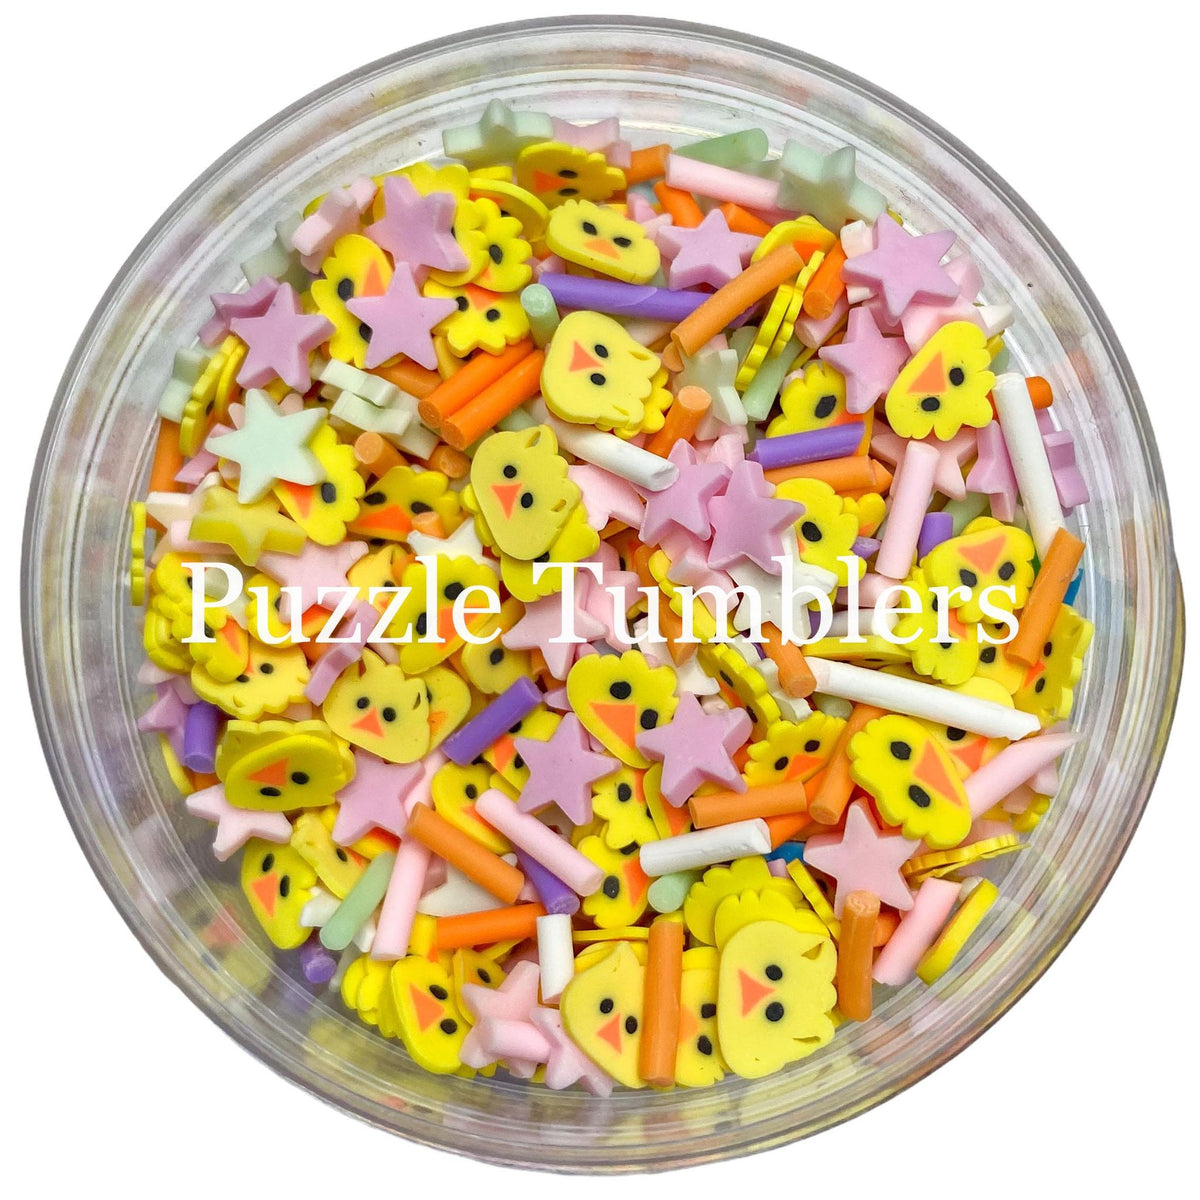 PINK LEMONADE - POLYMER CLAY SPRINKLES – Puzzle Tumblers